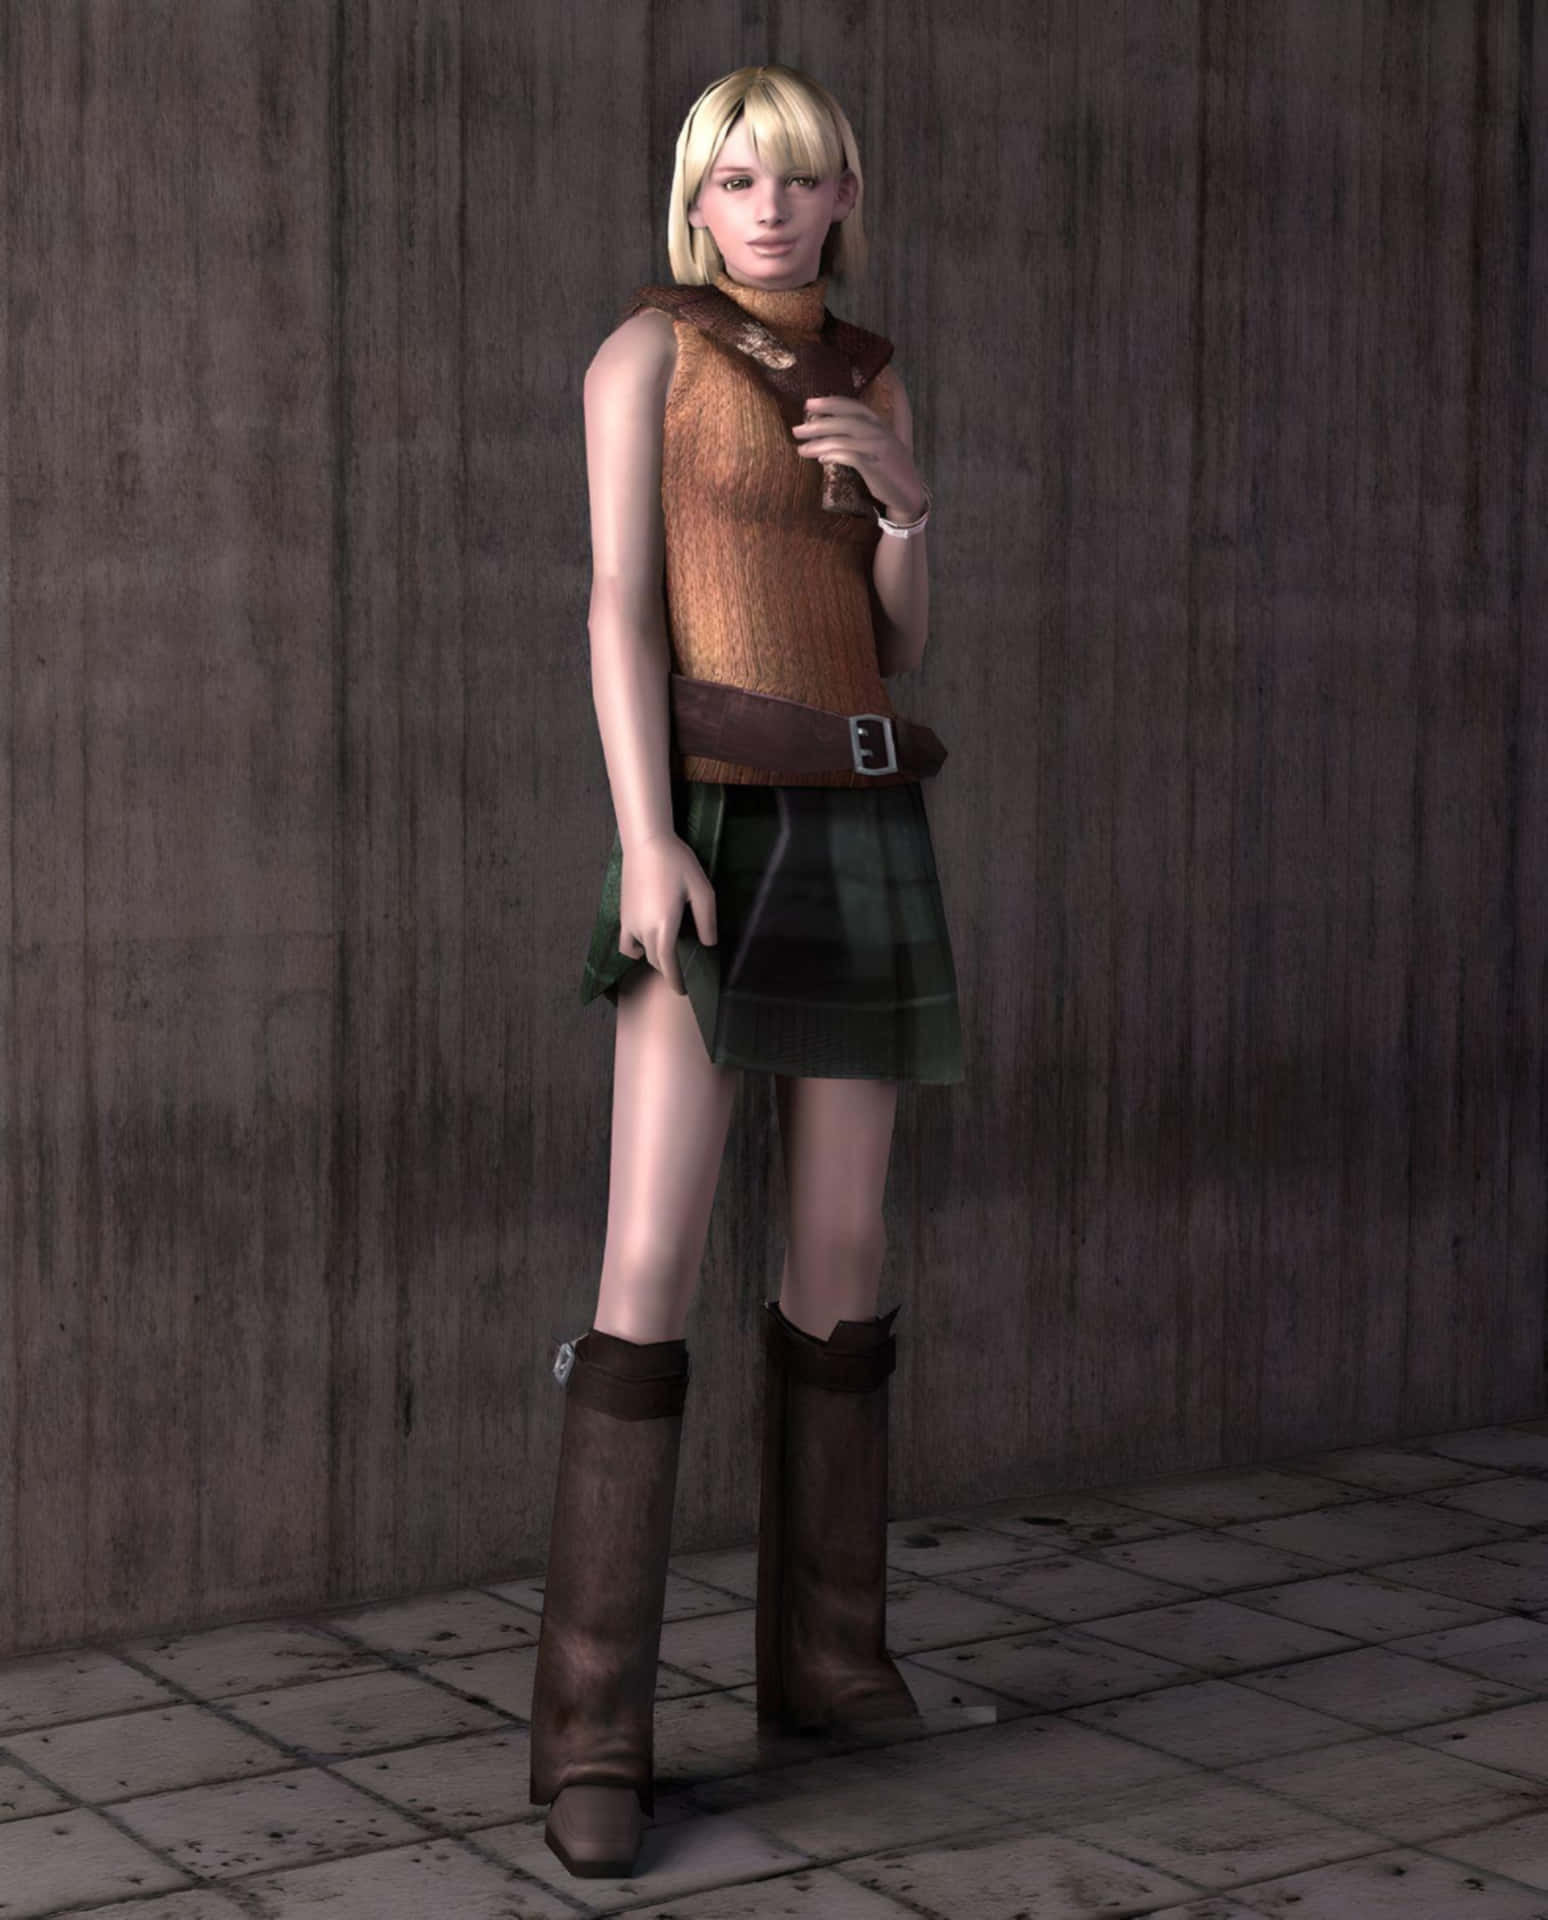 Intense Moment Of Ashley Graham In Resident Evil Game Wallpaper